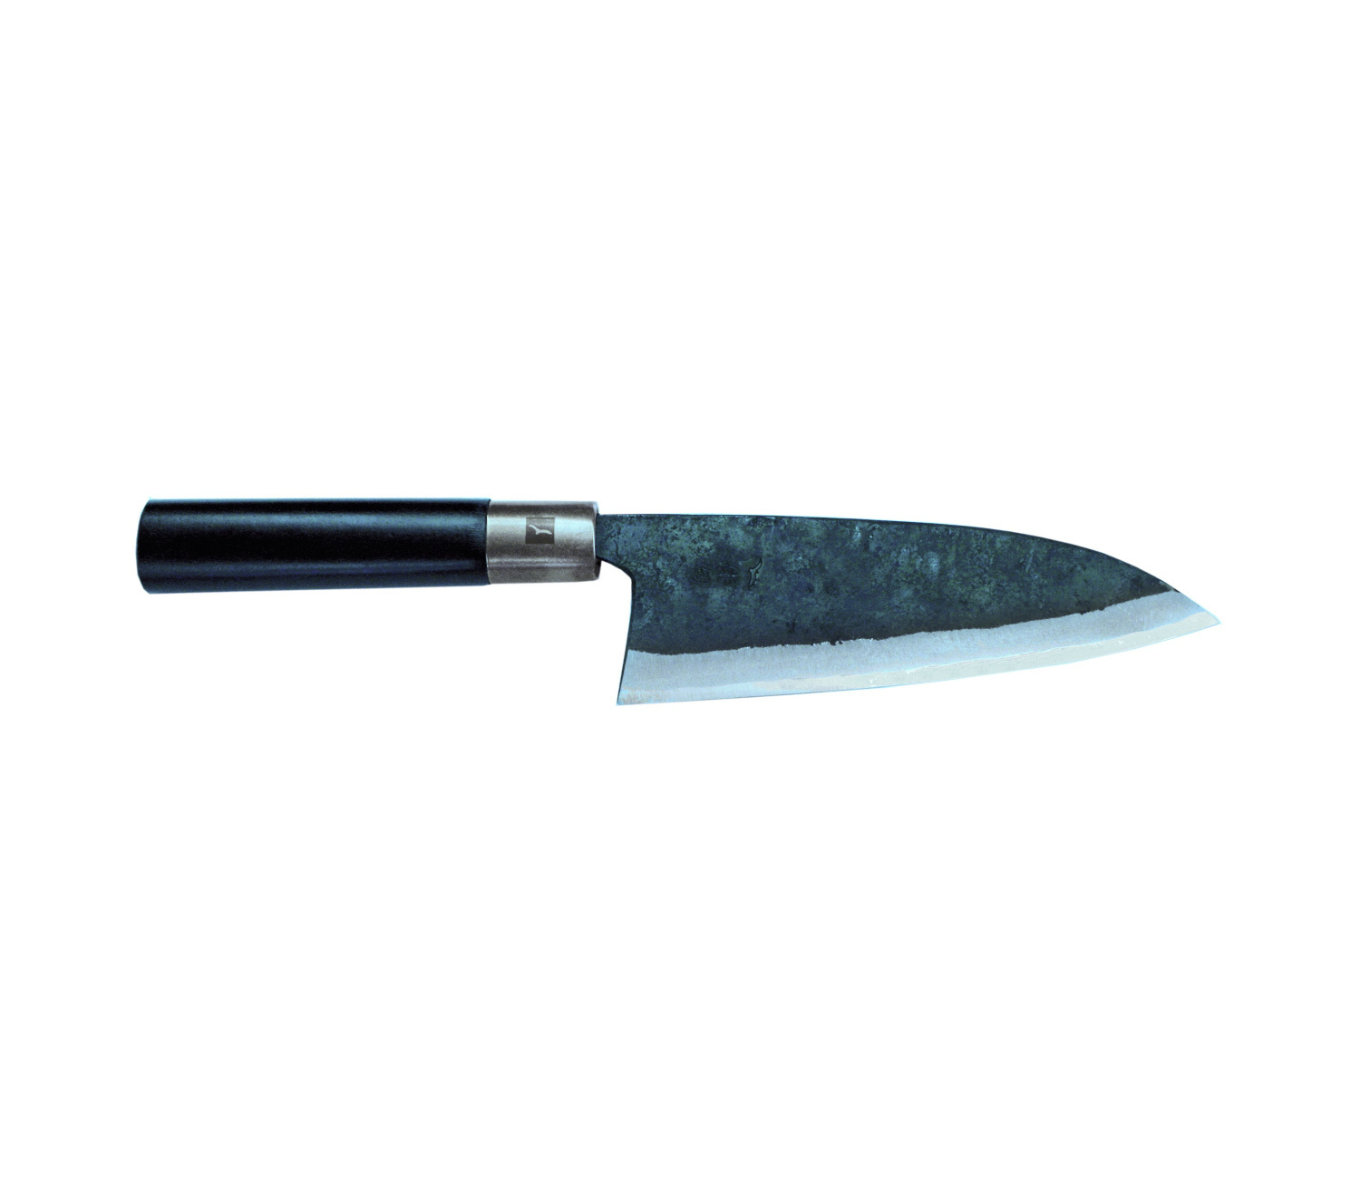 Das Deba ist das traditionelle Messer, um Fisch zu filetieren sowie Fische und Meeresfrüchte zu zerteilen.